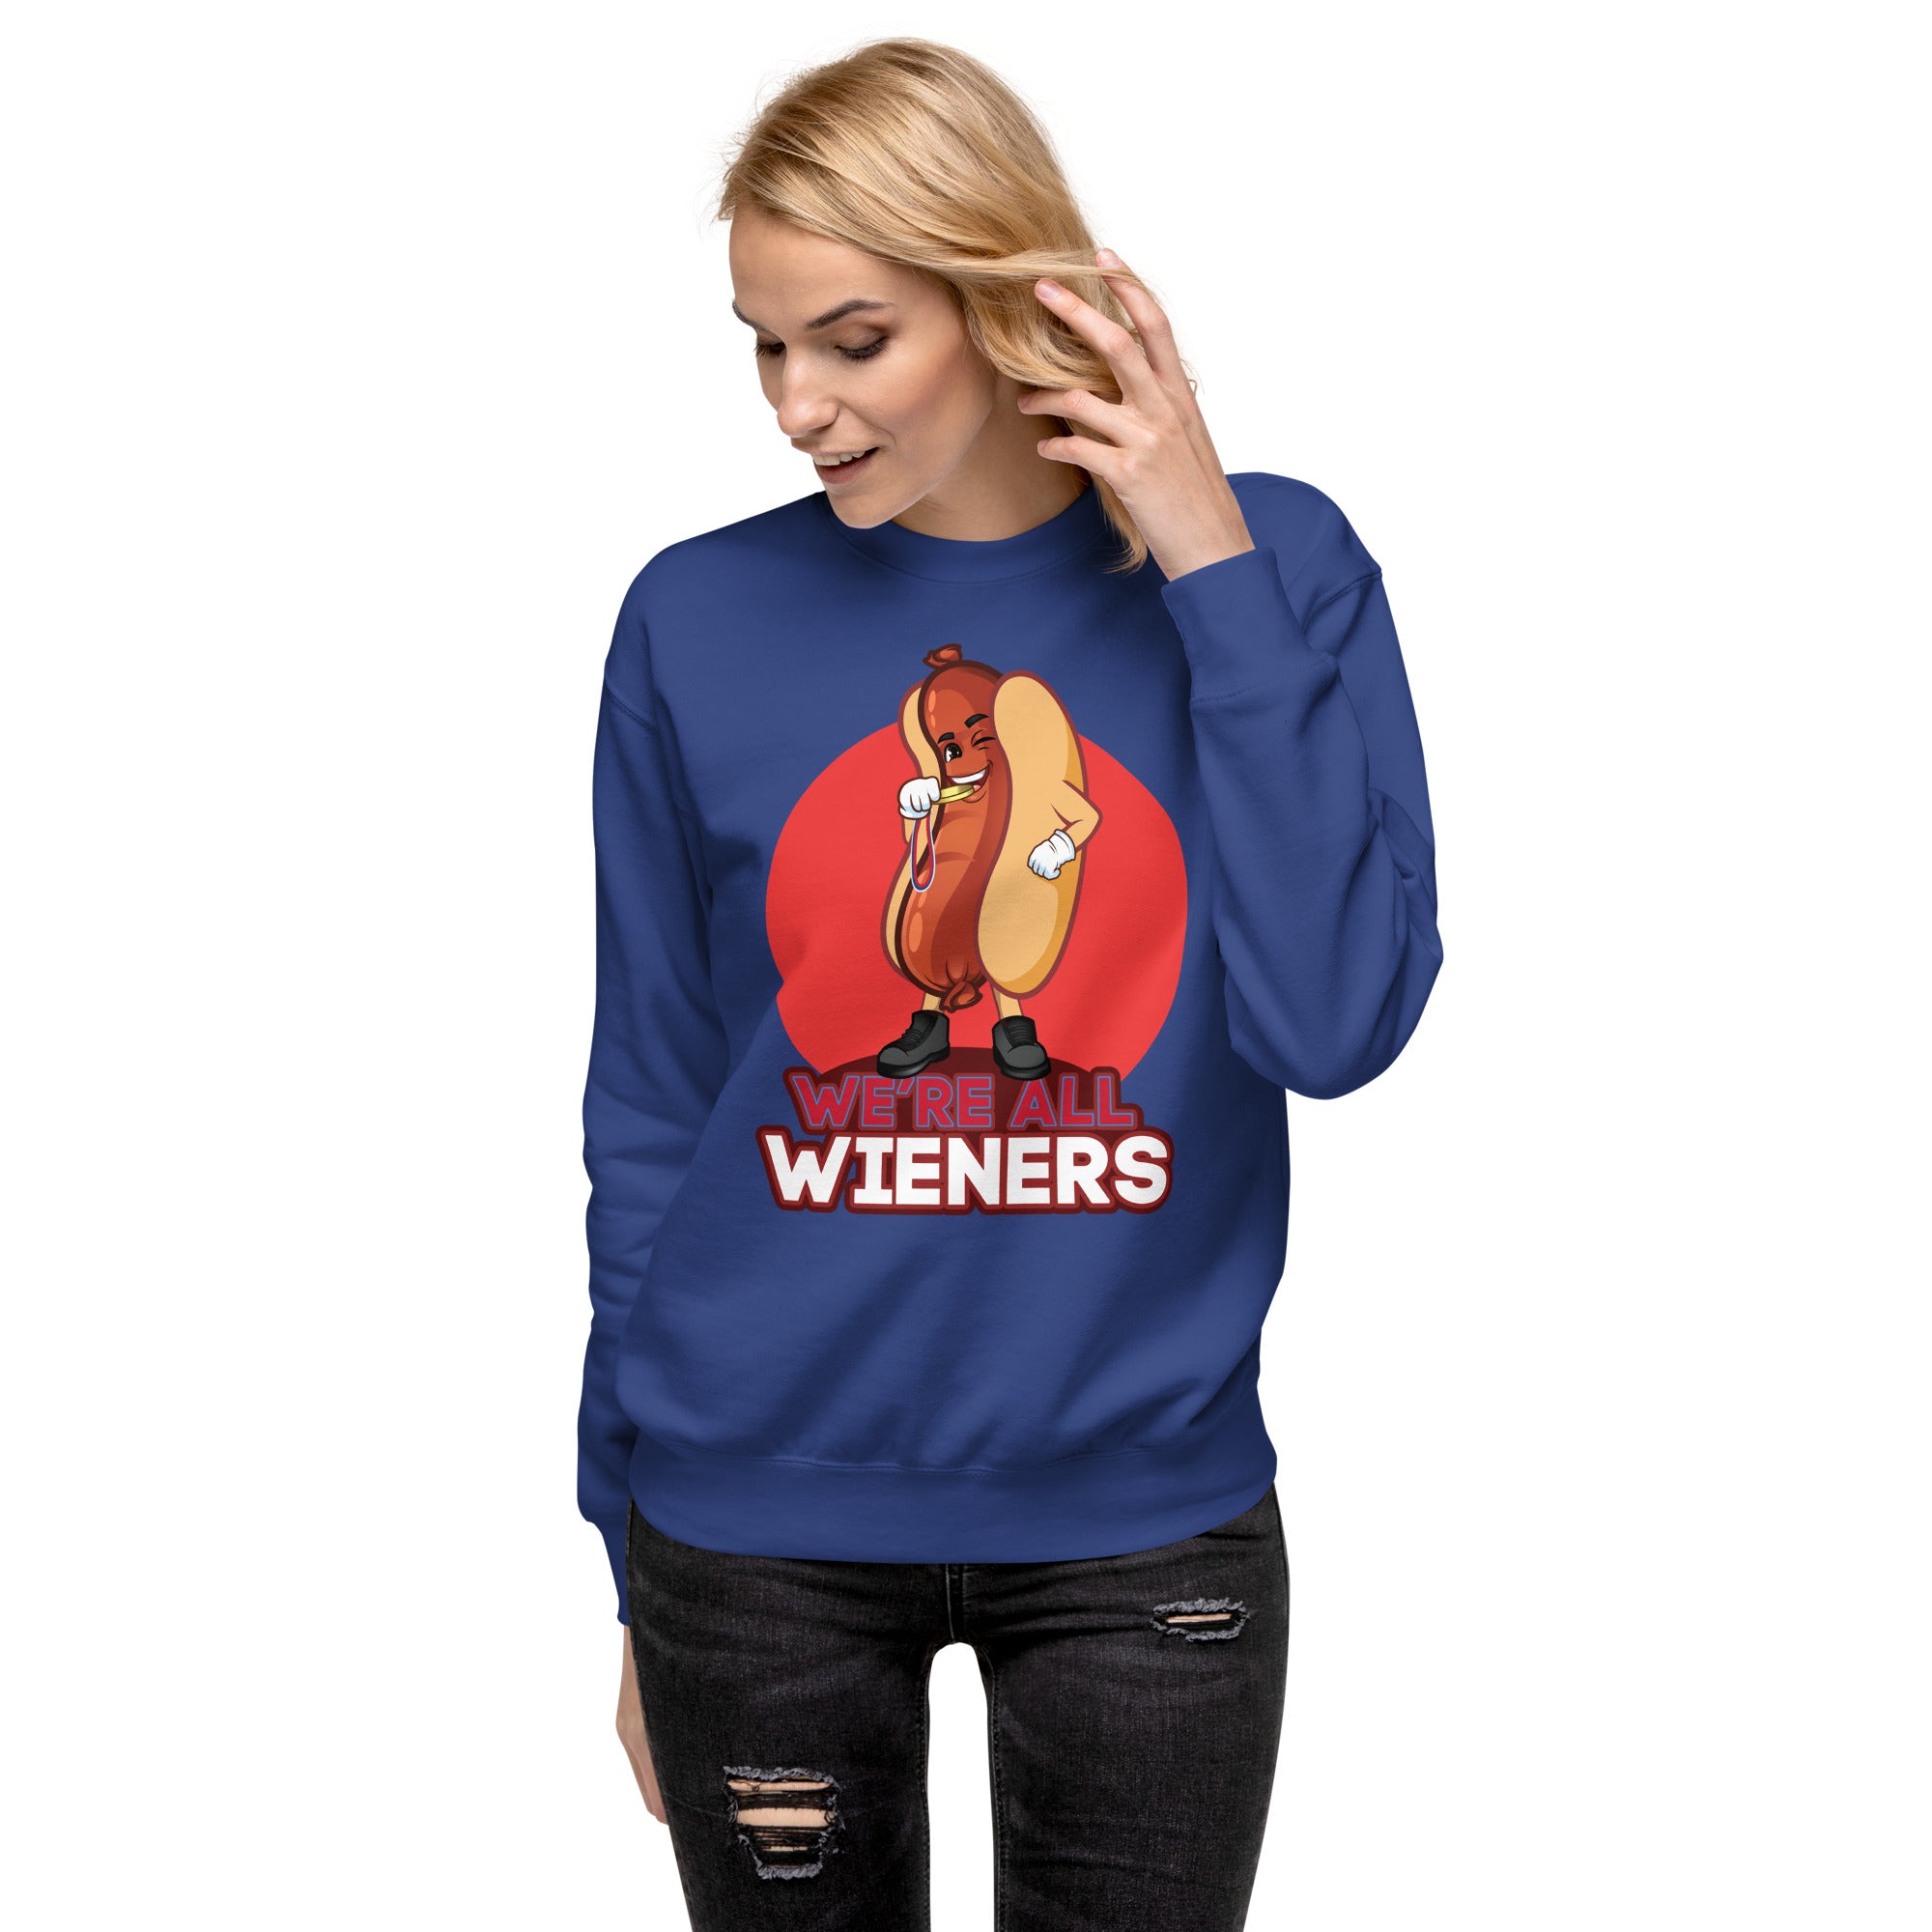 We're All Wieners Women's Heavy Crew Sweatshirt - Red